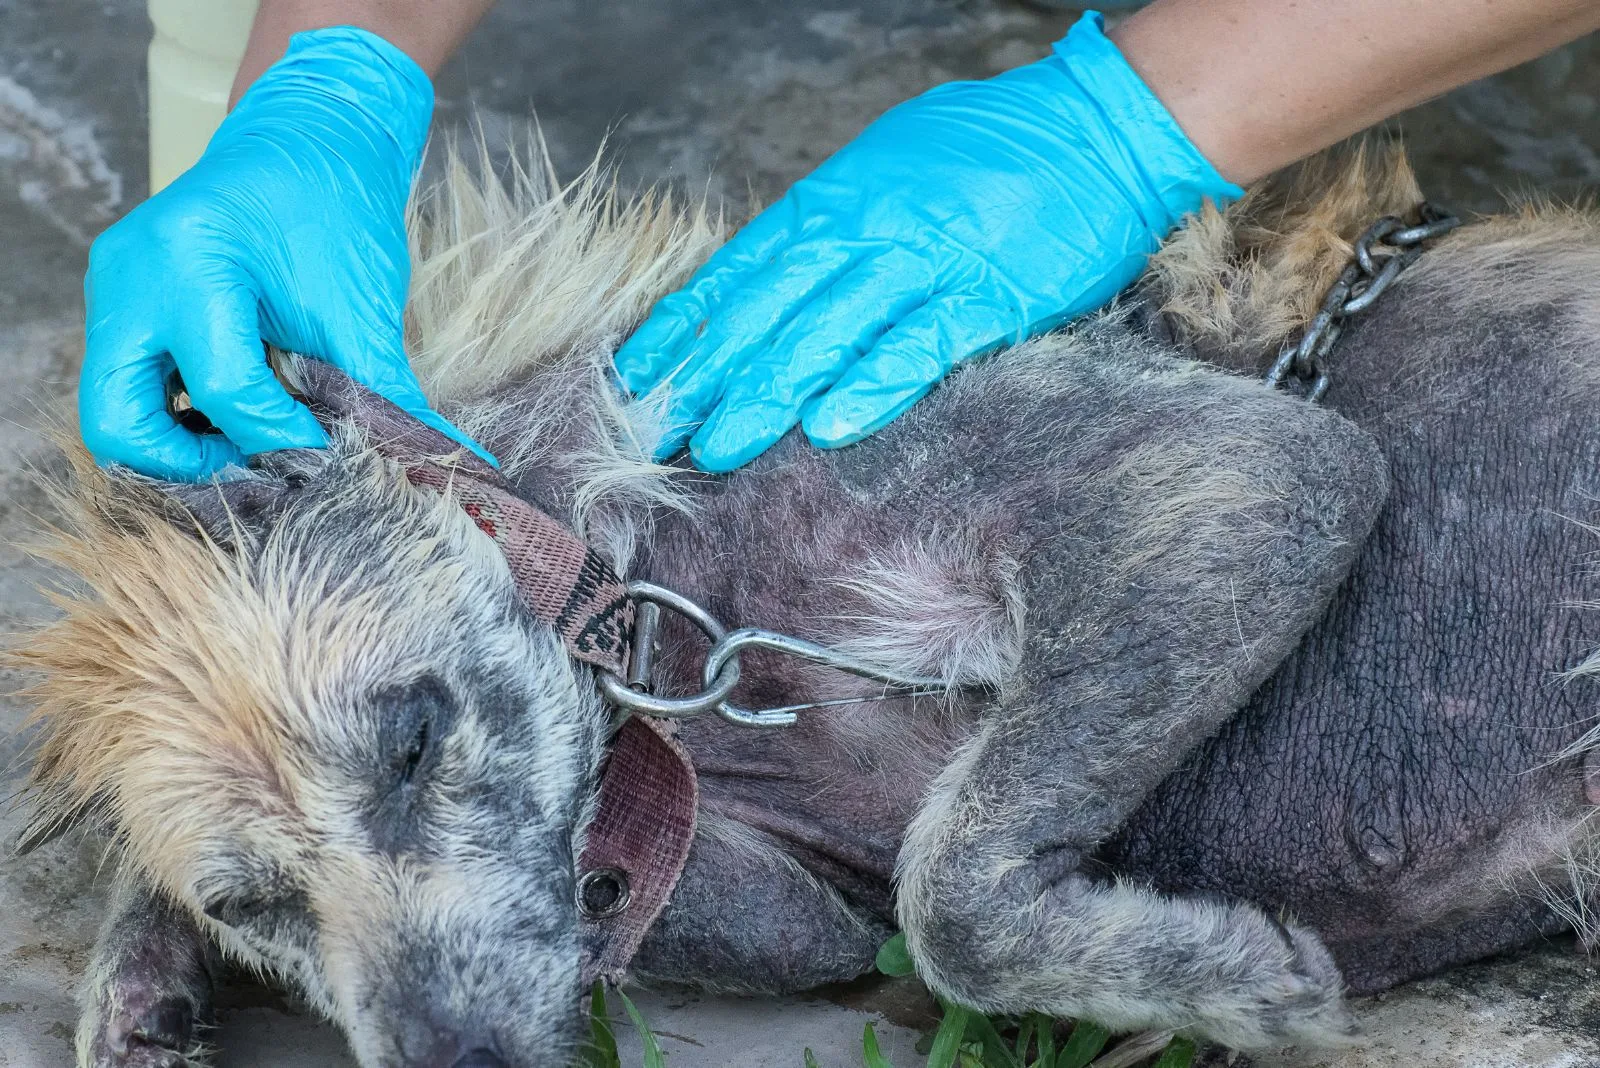 a veterinarian examines a mauled dog